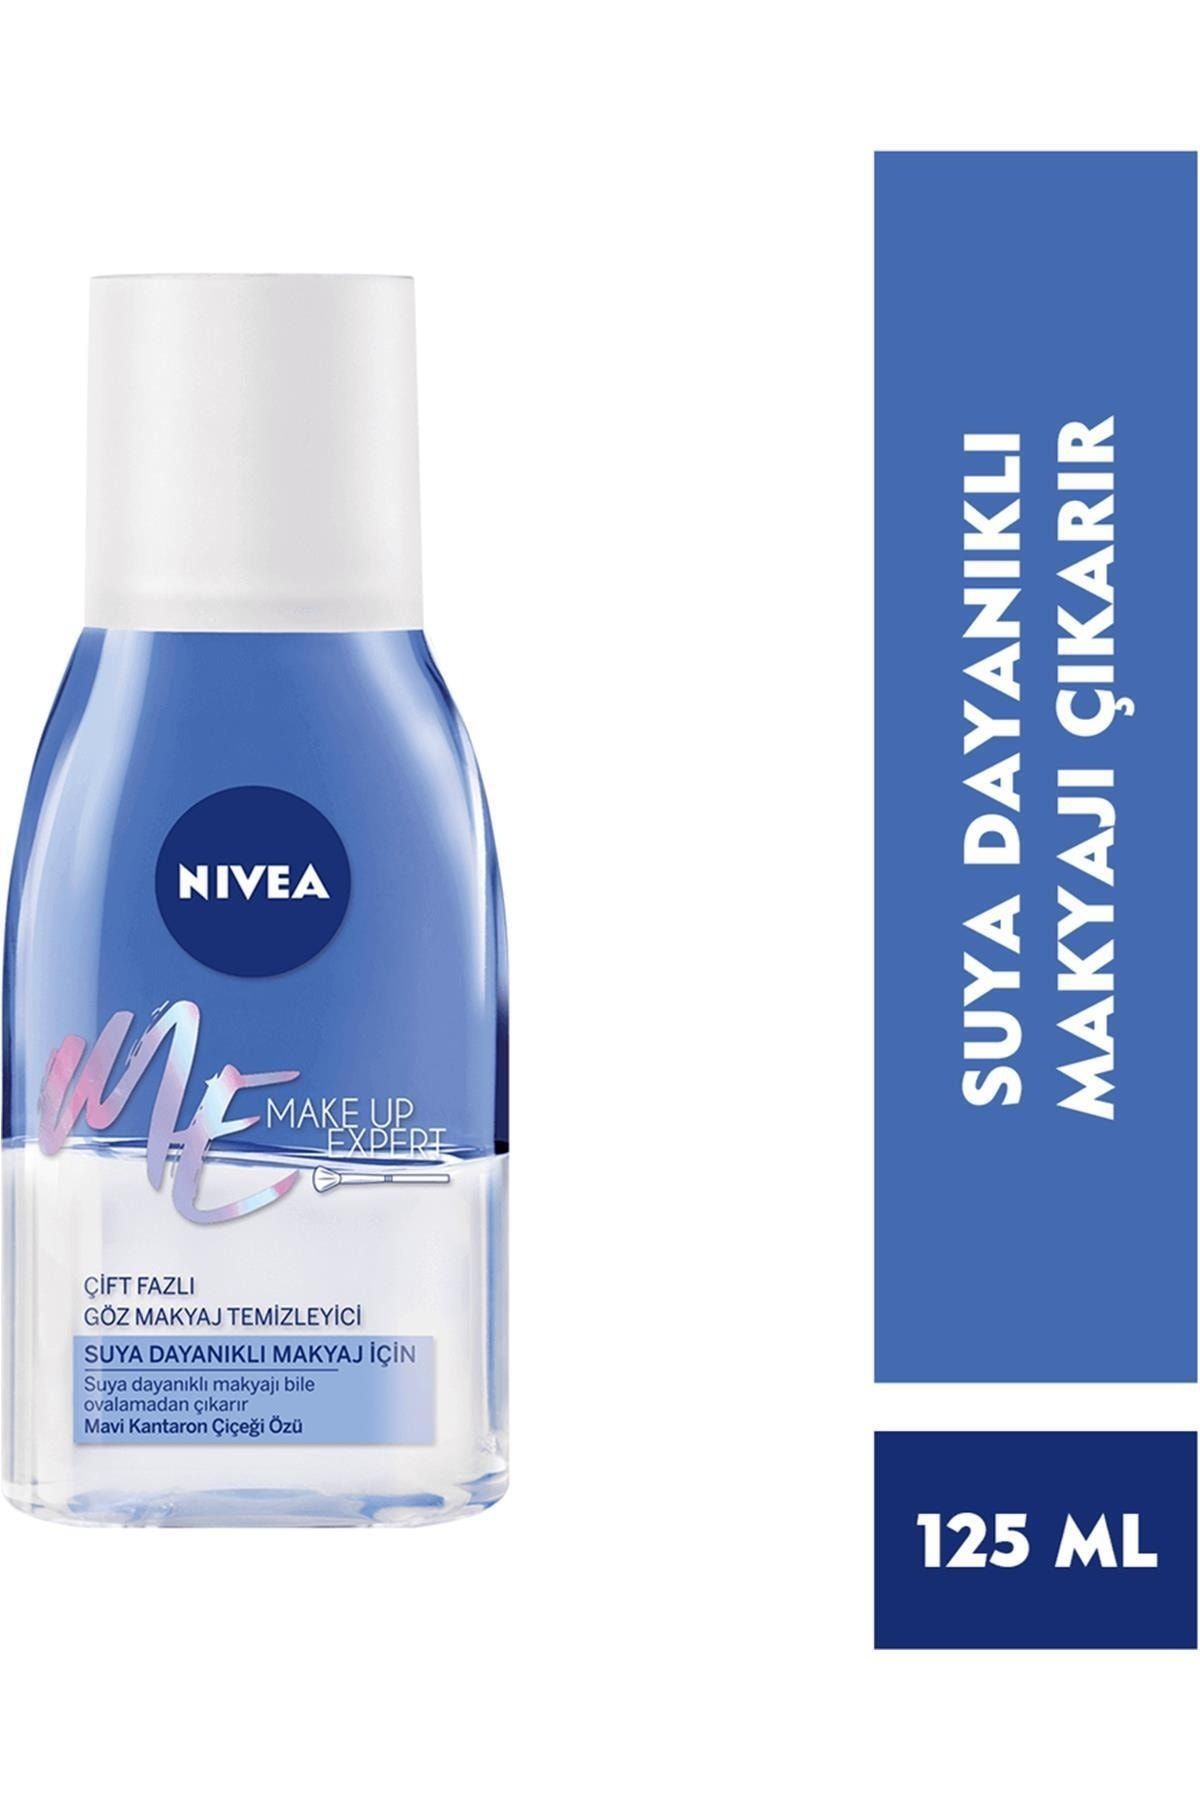 NIVEA Make Up Expert Çift Fazlı Göz Makyaj Temizleyici 125 ml